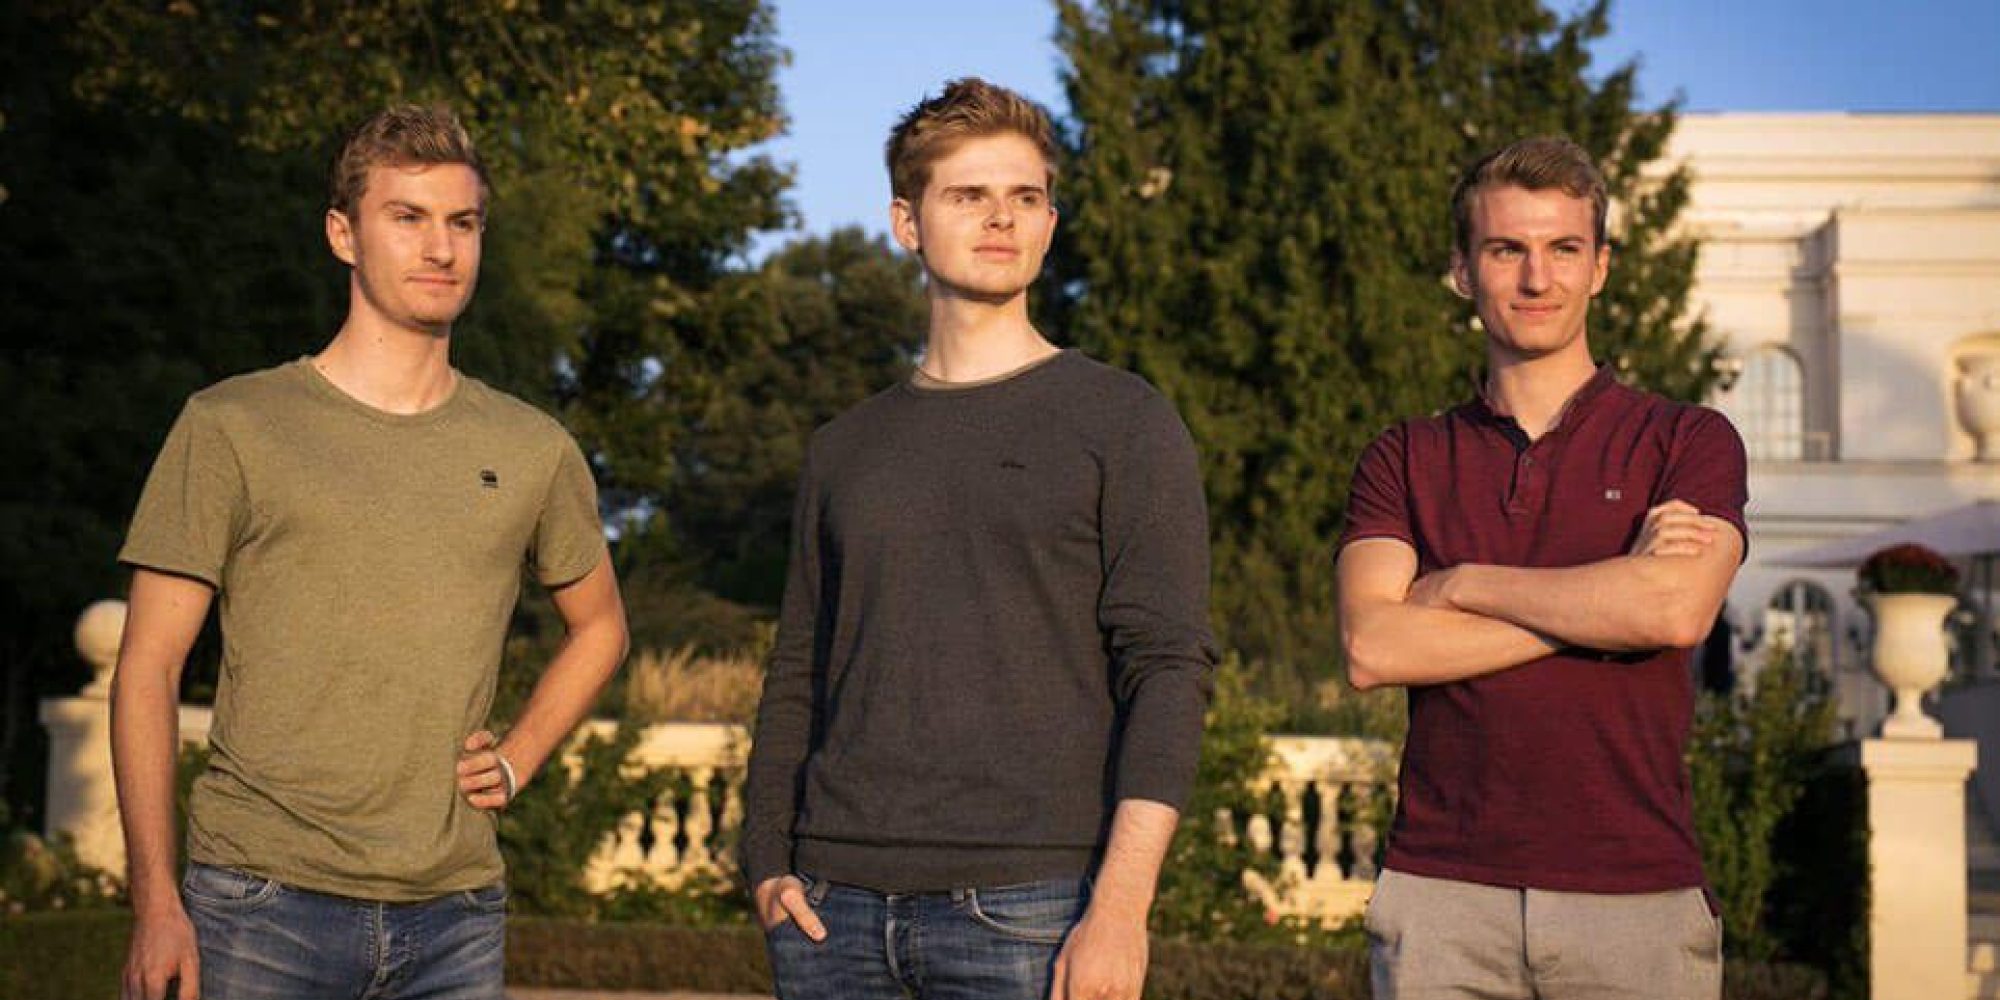 Drei junge Männer stehen vor Bäumen und einem herrschaftlichen Haus.